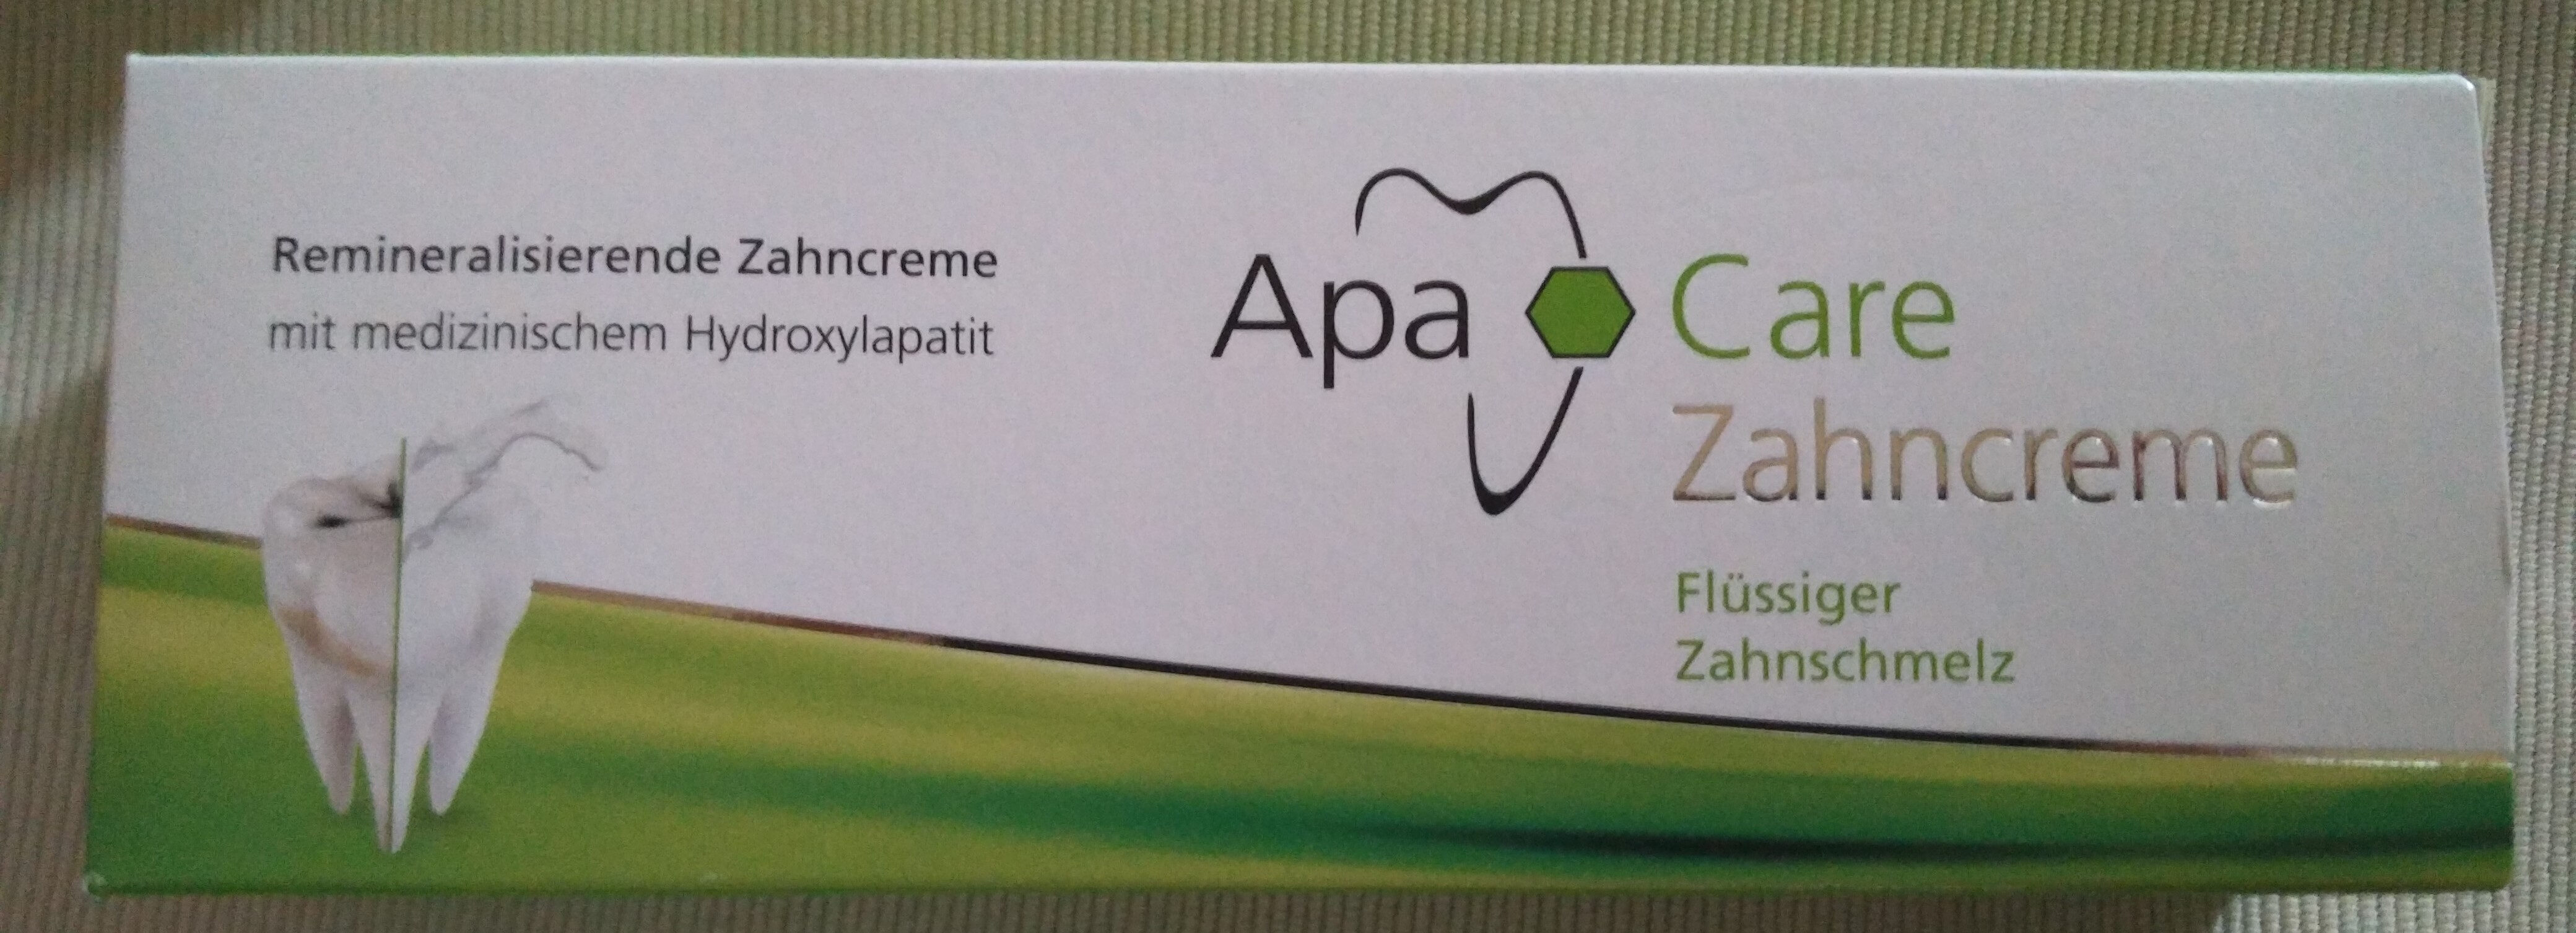 Care Zahncreme (Flüssiger Zahnschmelz) - 製品 - de